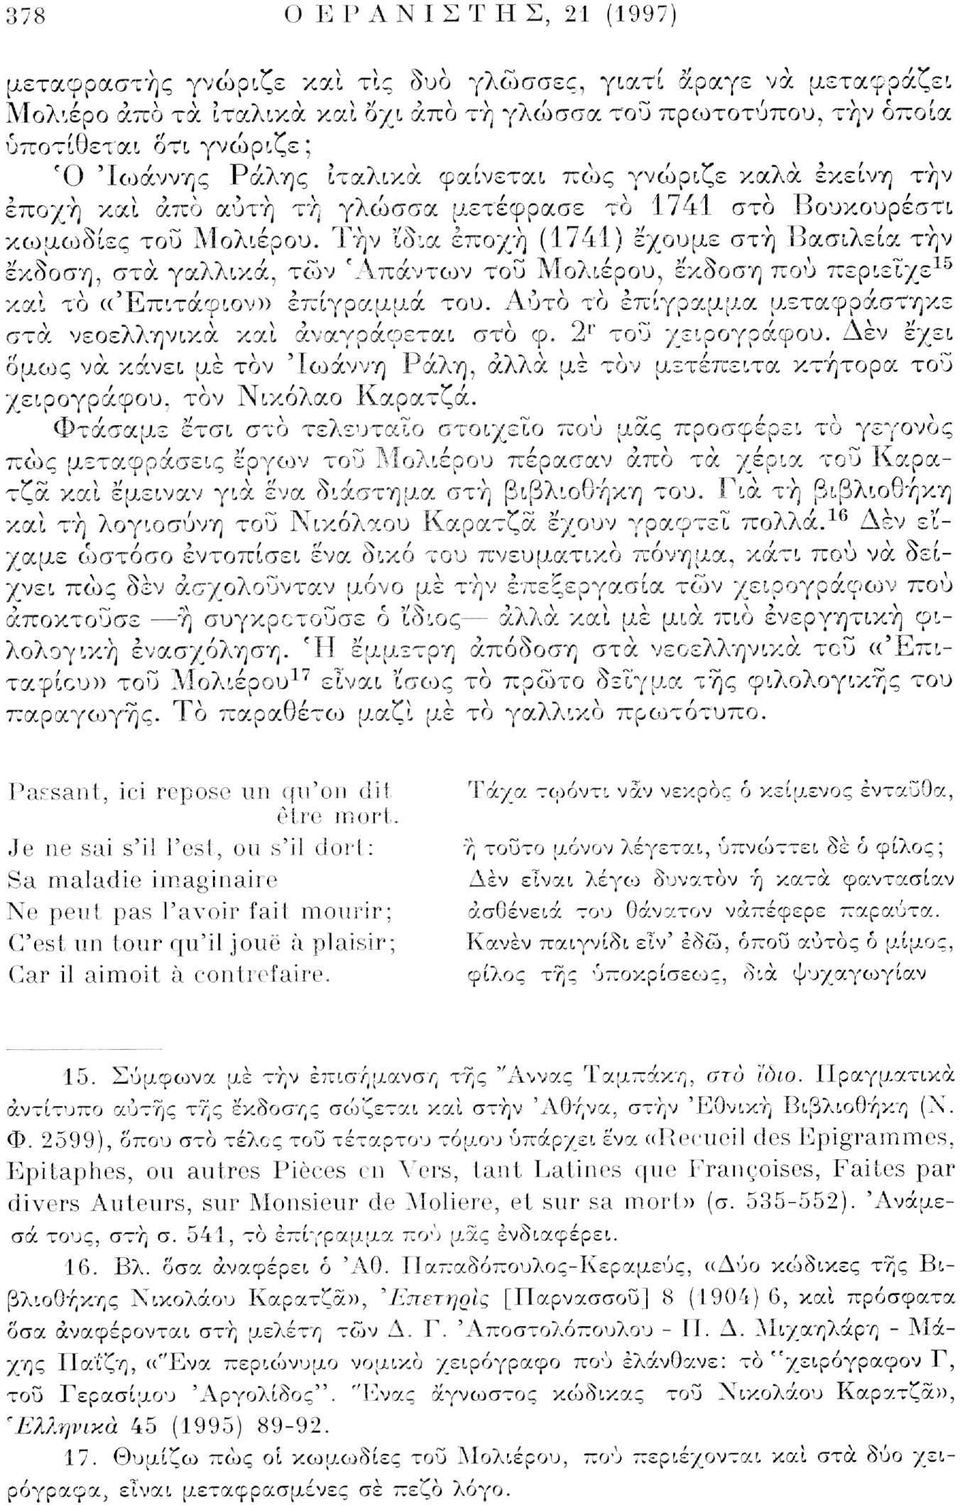 Την 'ίδια εποχή (1741) έχουμε στή Βασιλεία τήν έκδοση, στα γαλλικά, των 'Απάντων του Μολιέρου, έκδοση πού περιείχε 10 και το «Έπιτάφιον» επίγραμμα του.